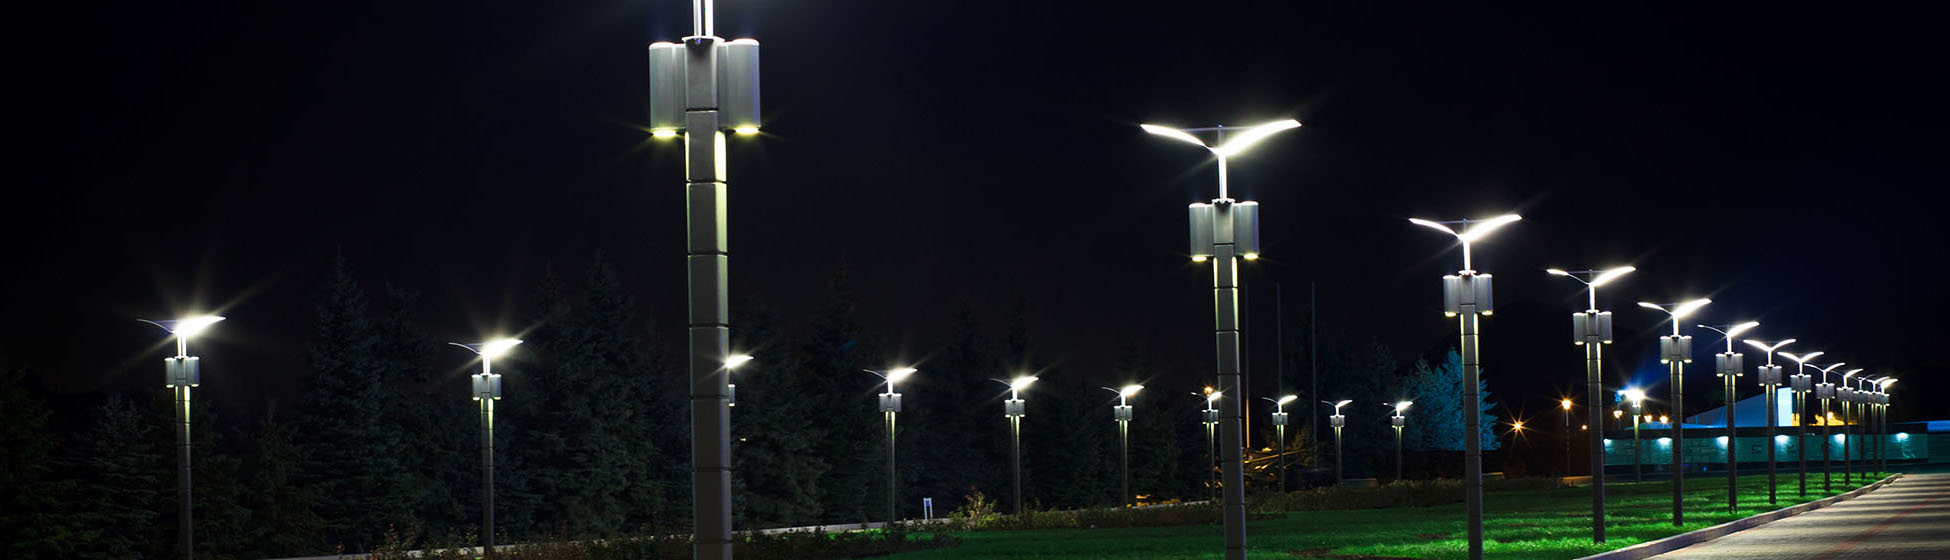 Eclairage public solaire led exterieur